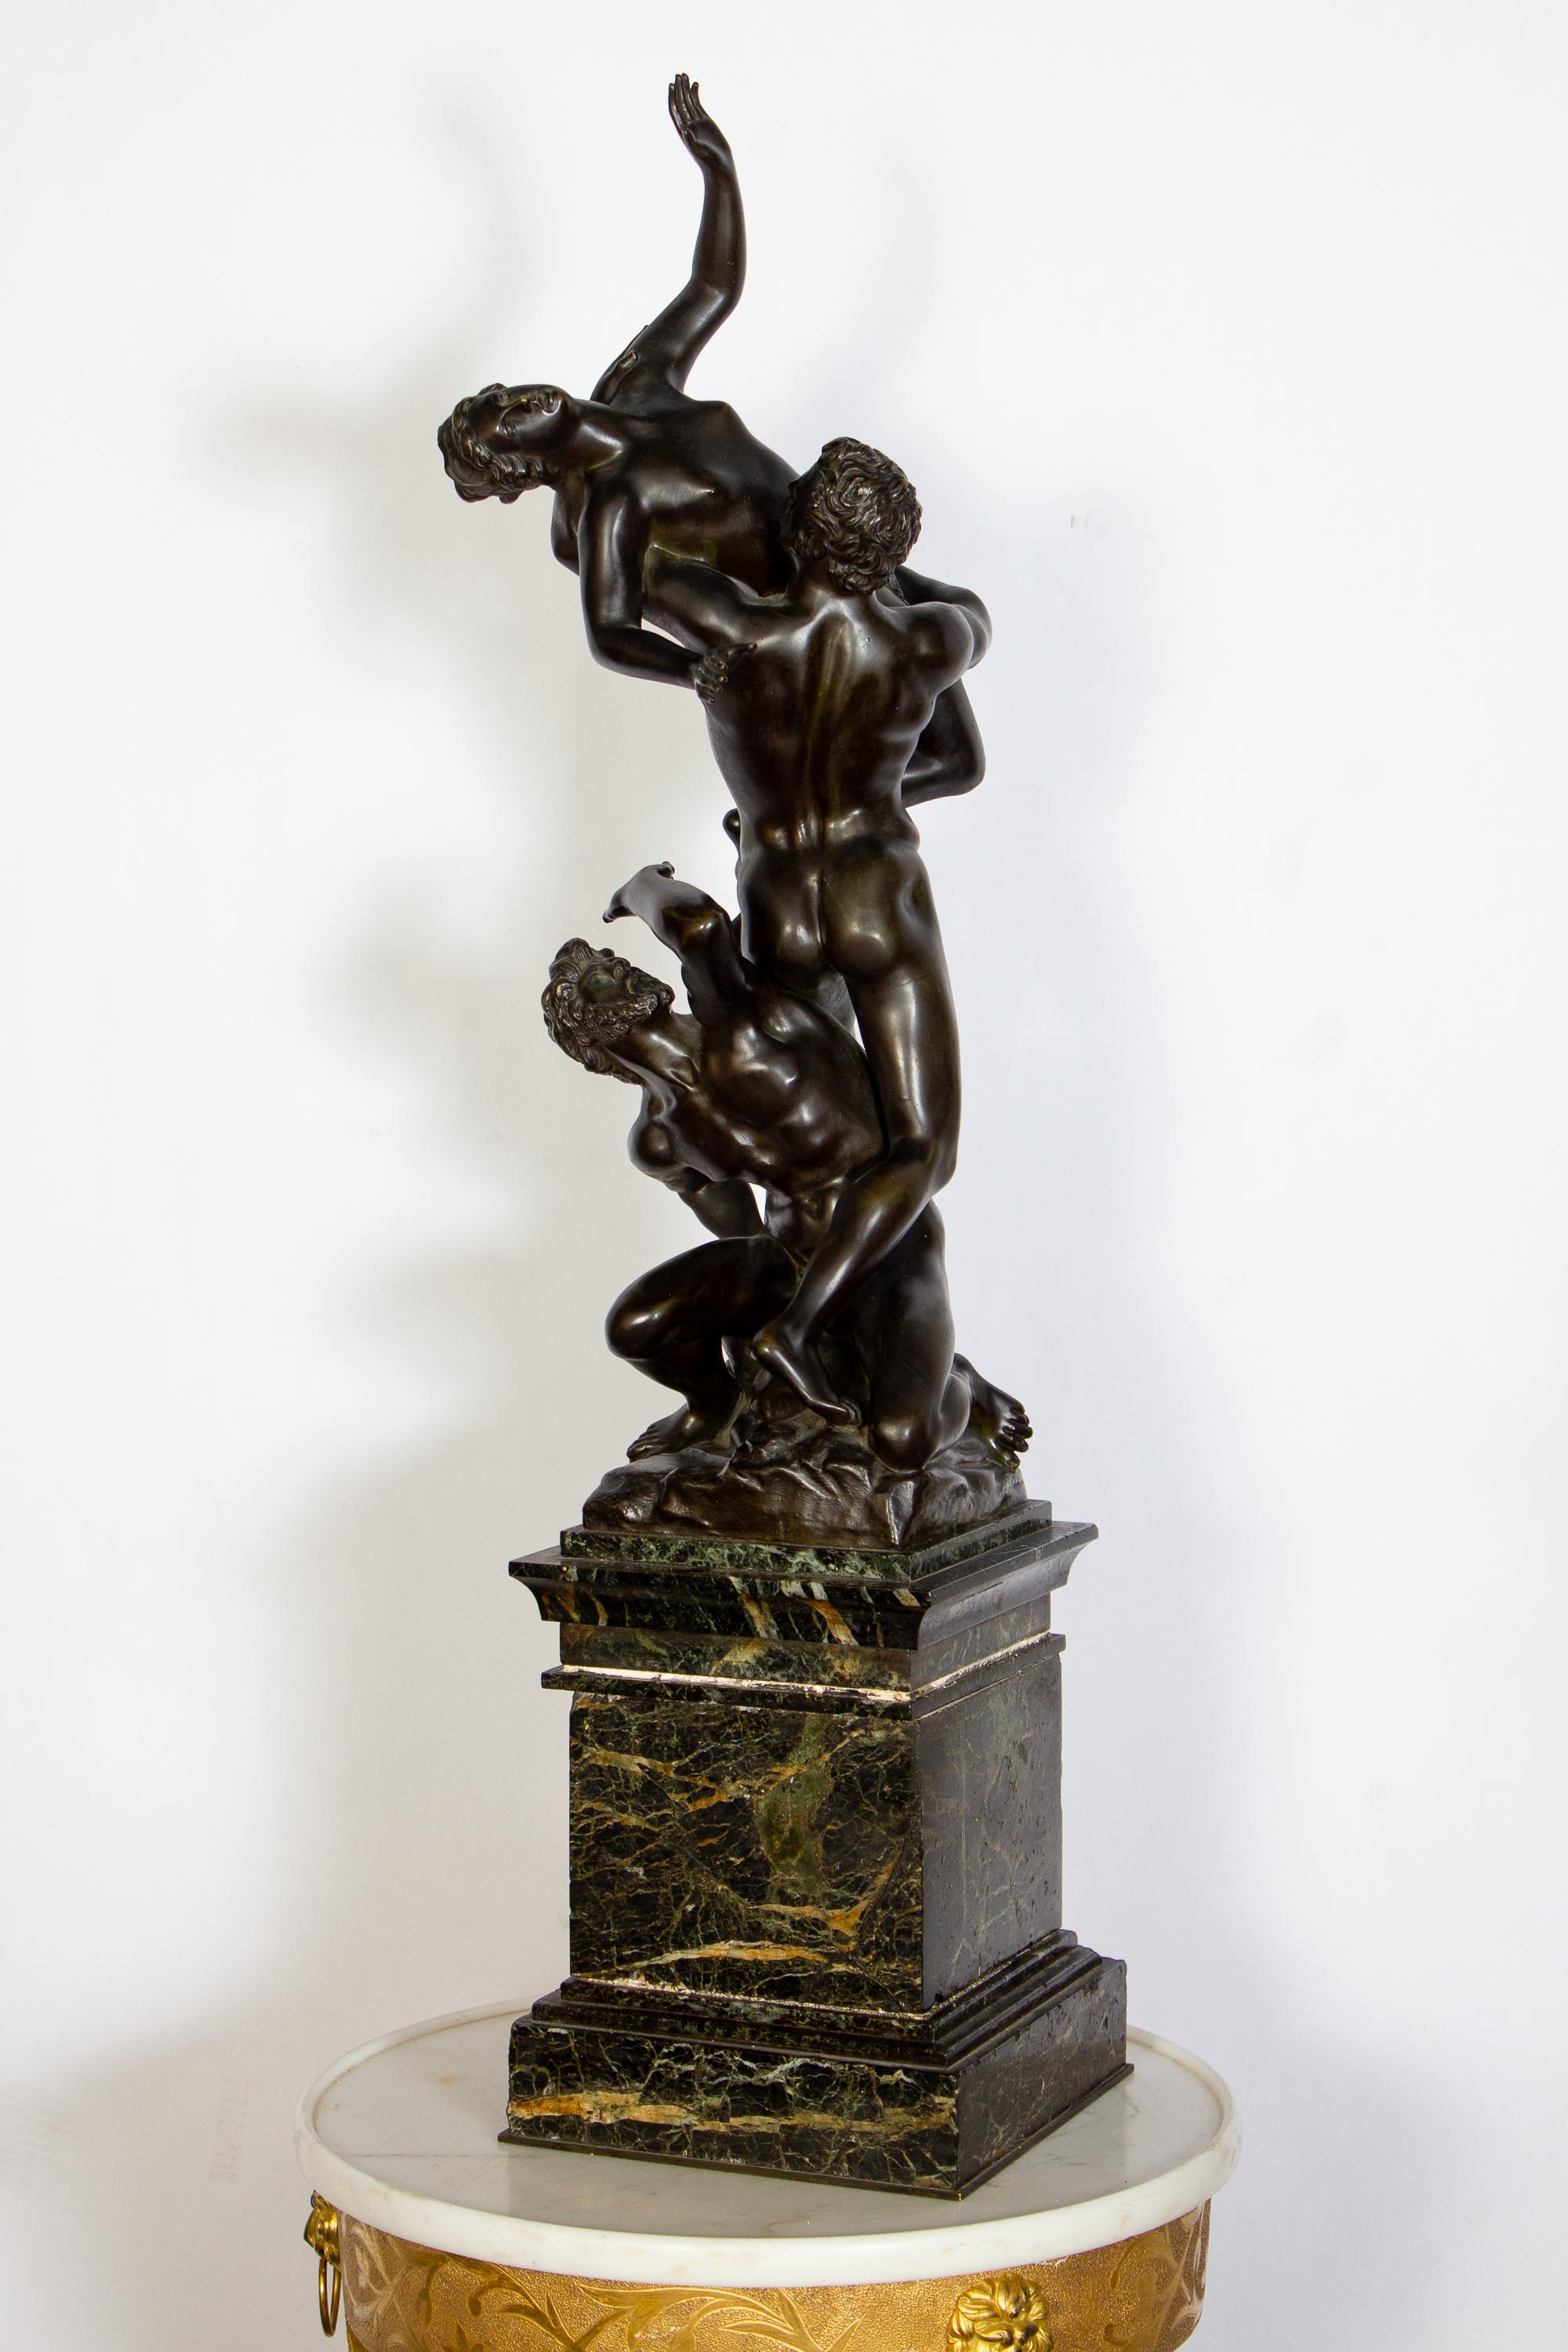 Schöne Gruppe von Skulpturen in Bronze nach  Jean de Boulogne (Giambologna)
Die quälend verdrehte Vergewaltigung der Sabinerinnen  ist eine der schönsten und technisch schwierigsten Skulpturen der Welt. Drei ineinander verschlungene Körper, zwei